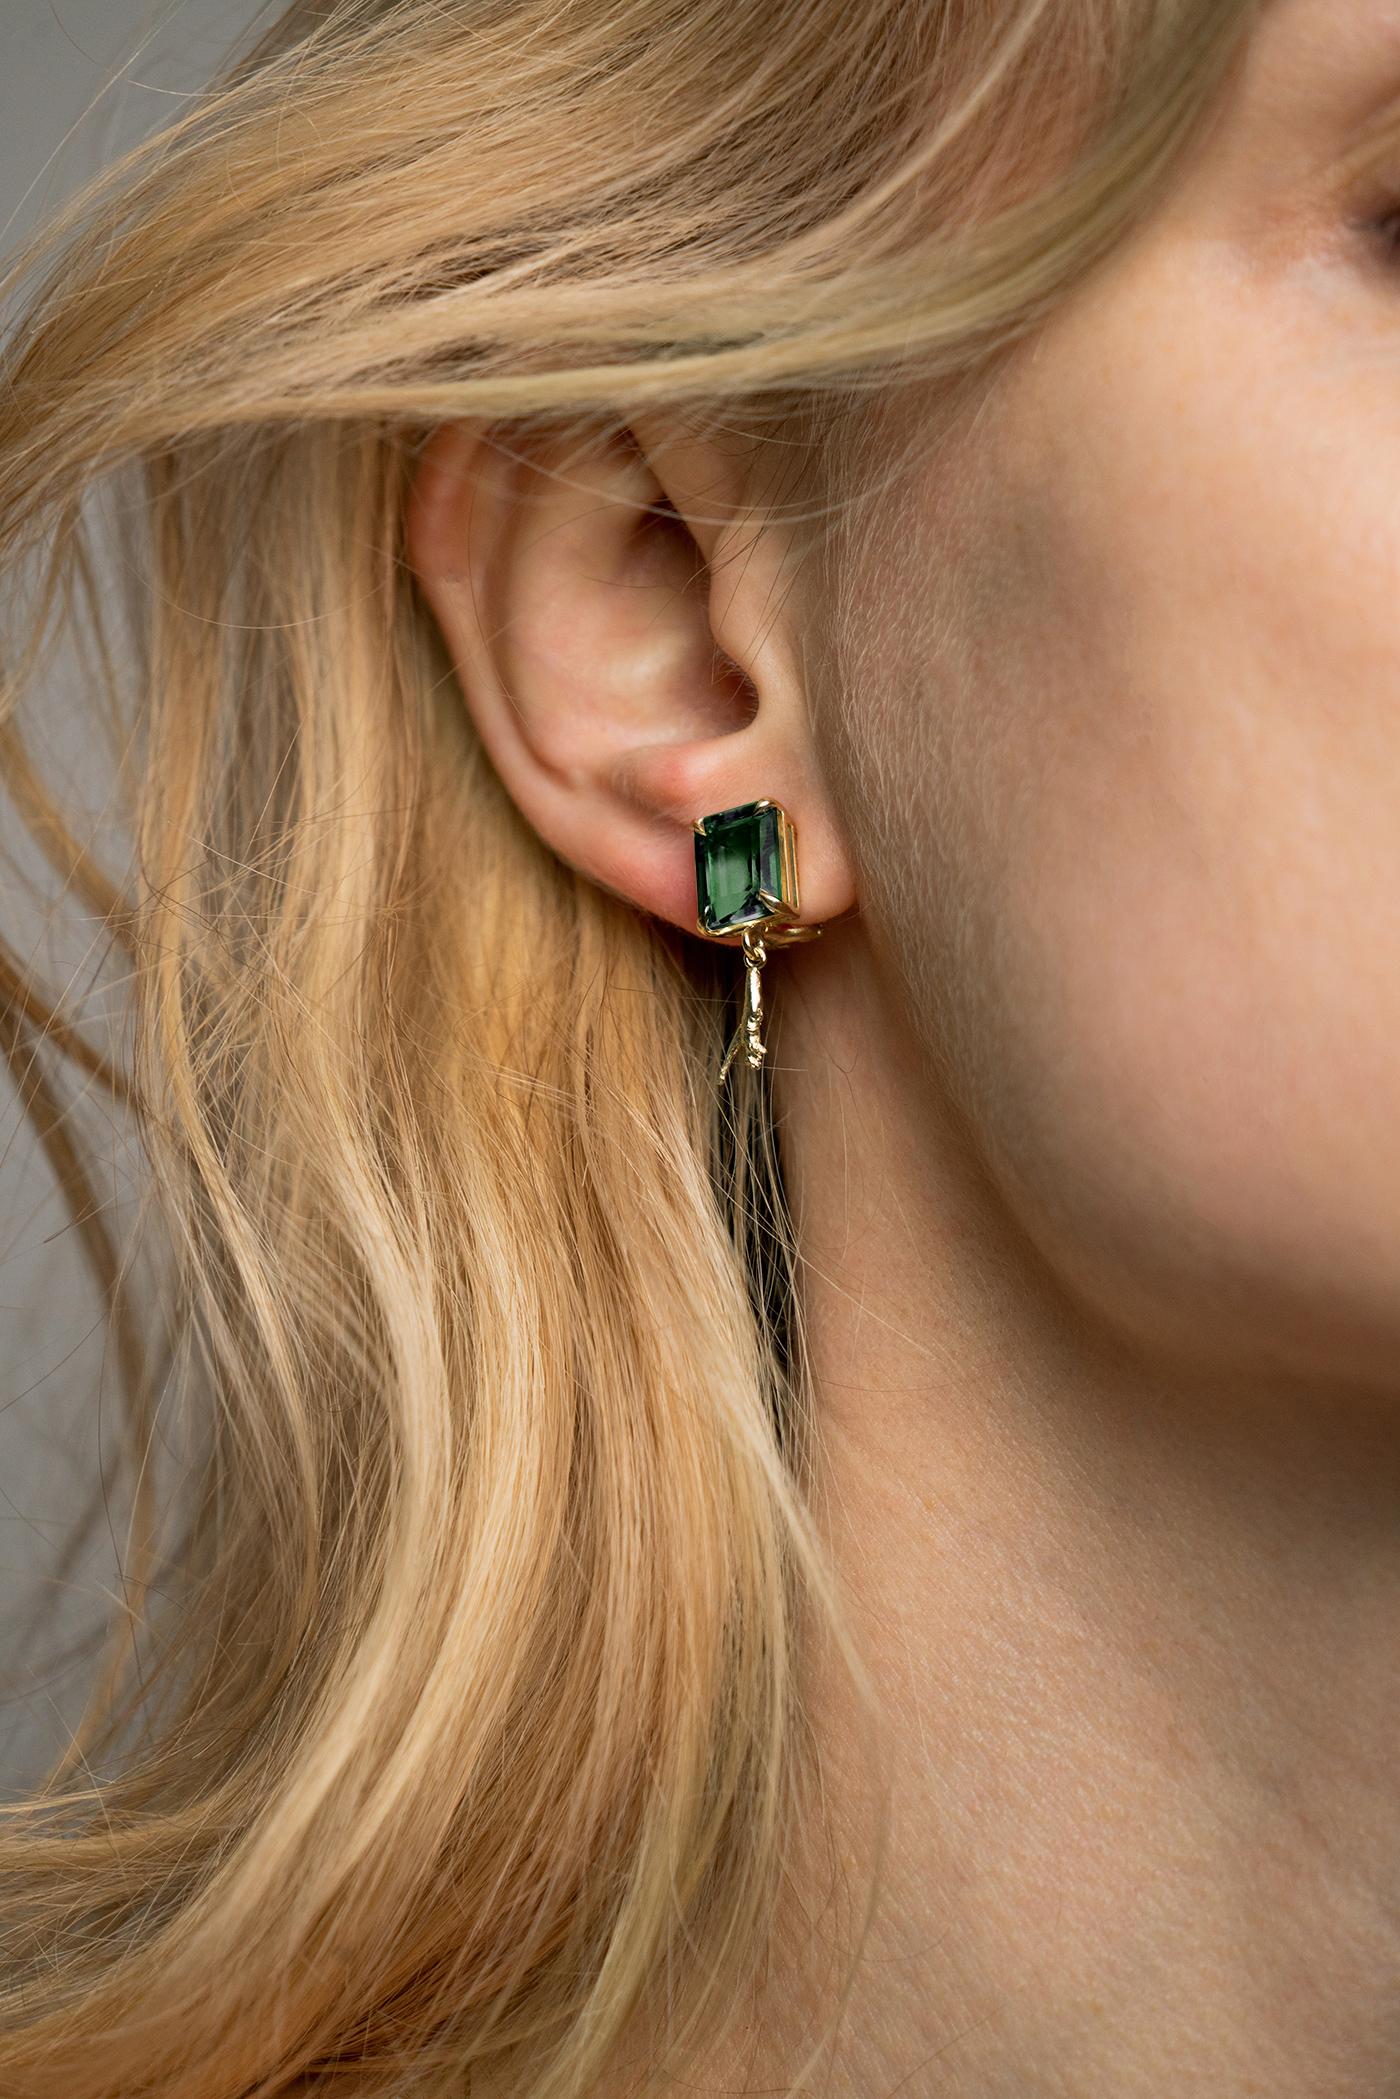 Diese modernen Mesopotamia-Ohrringe mit natürlichen Smaragden (insgesamt 3,5 Karat, achteckiger Schliff) gehören zur Kollektion Tea, die in einer Ausgabe der Vogue UA vorgestellt wurde. Diese Ohrringe aus 18 Karat Gelbgold wurden von der in Berlin